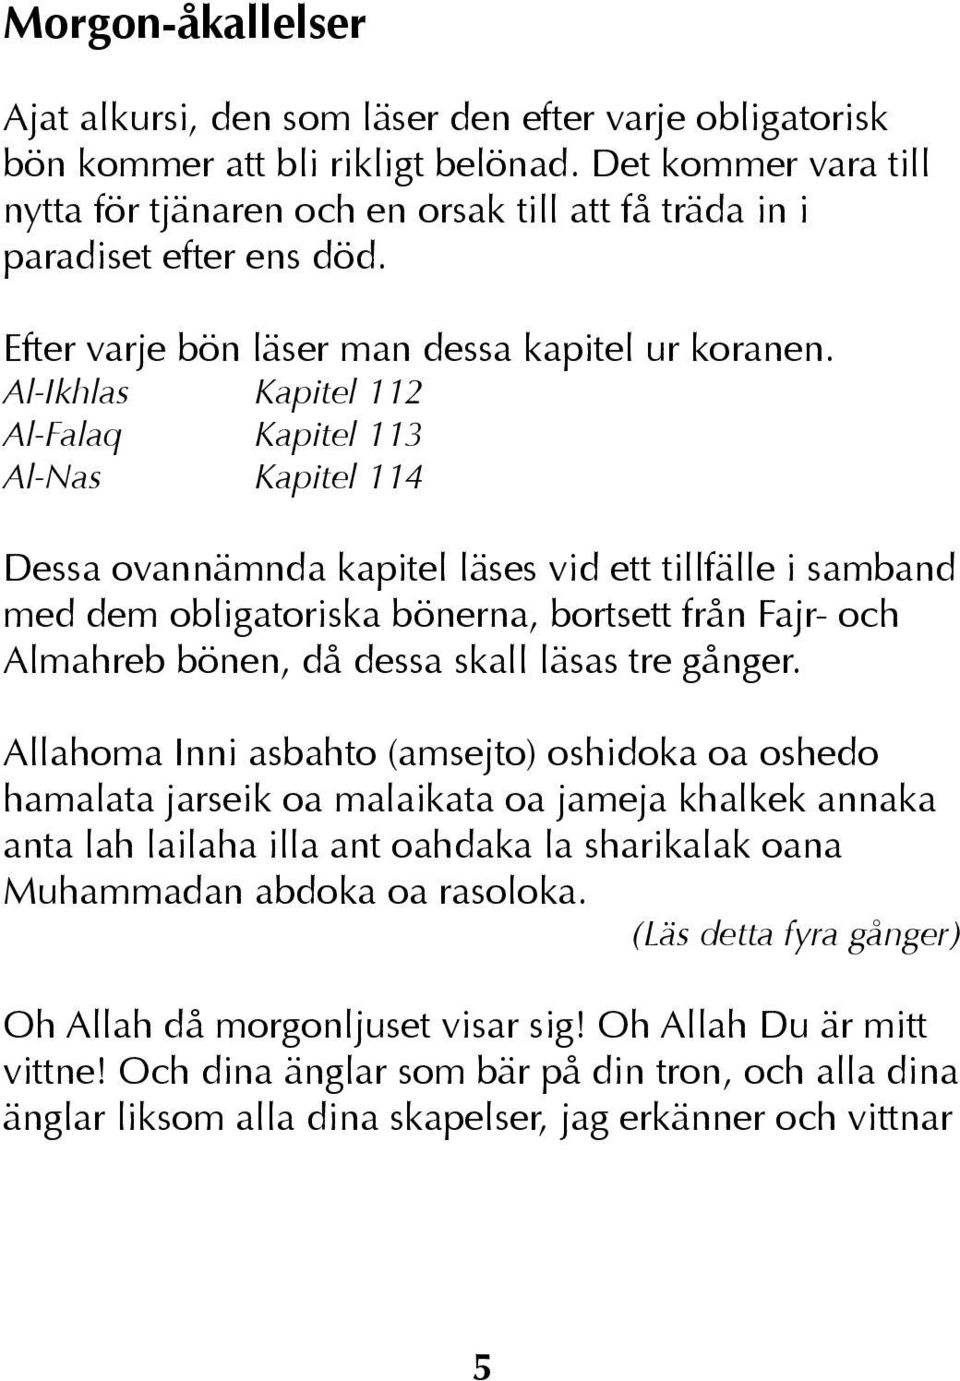 Al-Ikhlas Kapitel 112 Al-Falaq Kapitel 113 Al-Nas Kapitel 114 Dessa ovannämnda kapitel läses vid ett tillfälle i samband med dem obligatoriska bönerna, bortsett från Fajr- och Almahreb bönen, då